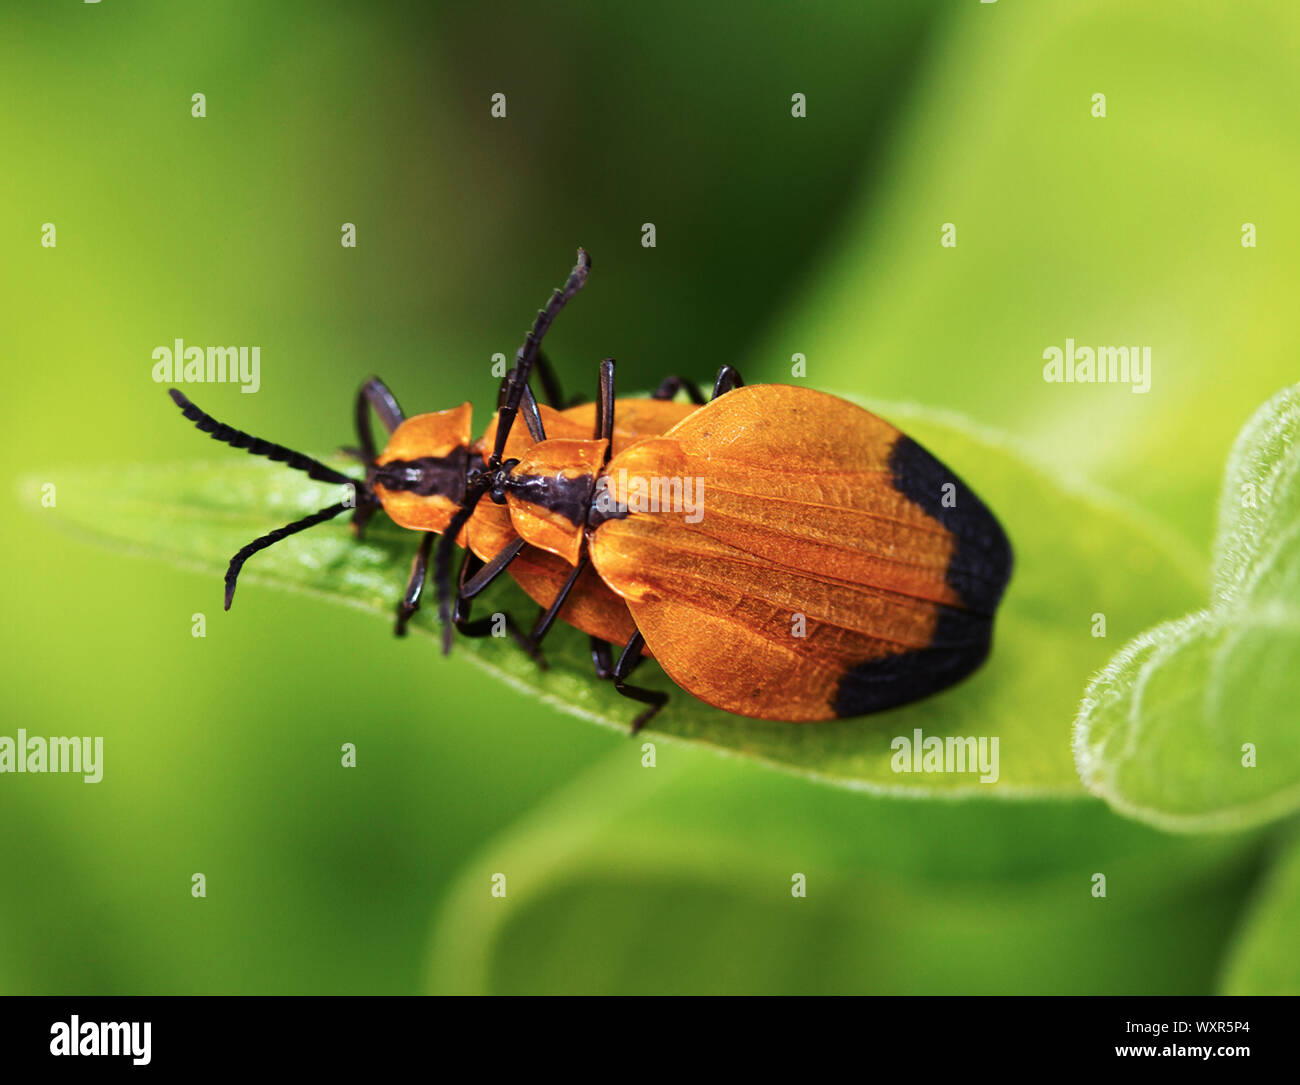 Die gezackte Antennen und erweiterte Flügeldecken des Hakens - winged Net-winged Käfer Käfer, so dass Sie leicht zu identifizieren. Die unterschiedlichen Farben sind aposomatic Stockfoto